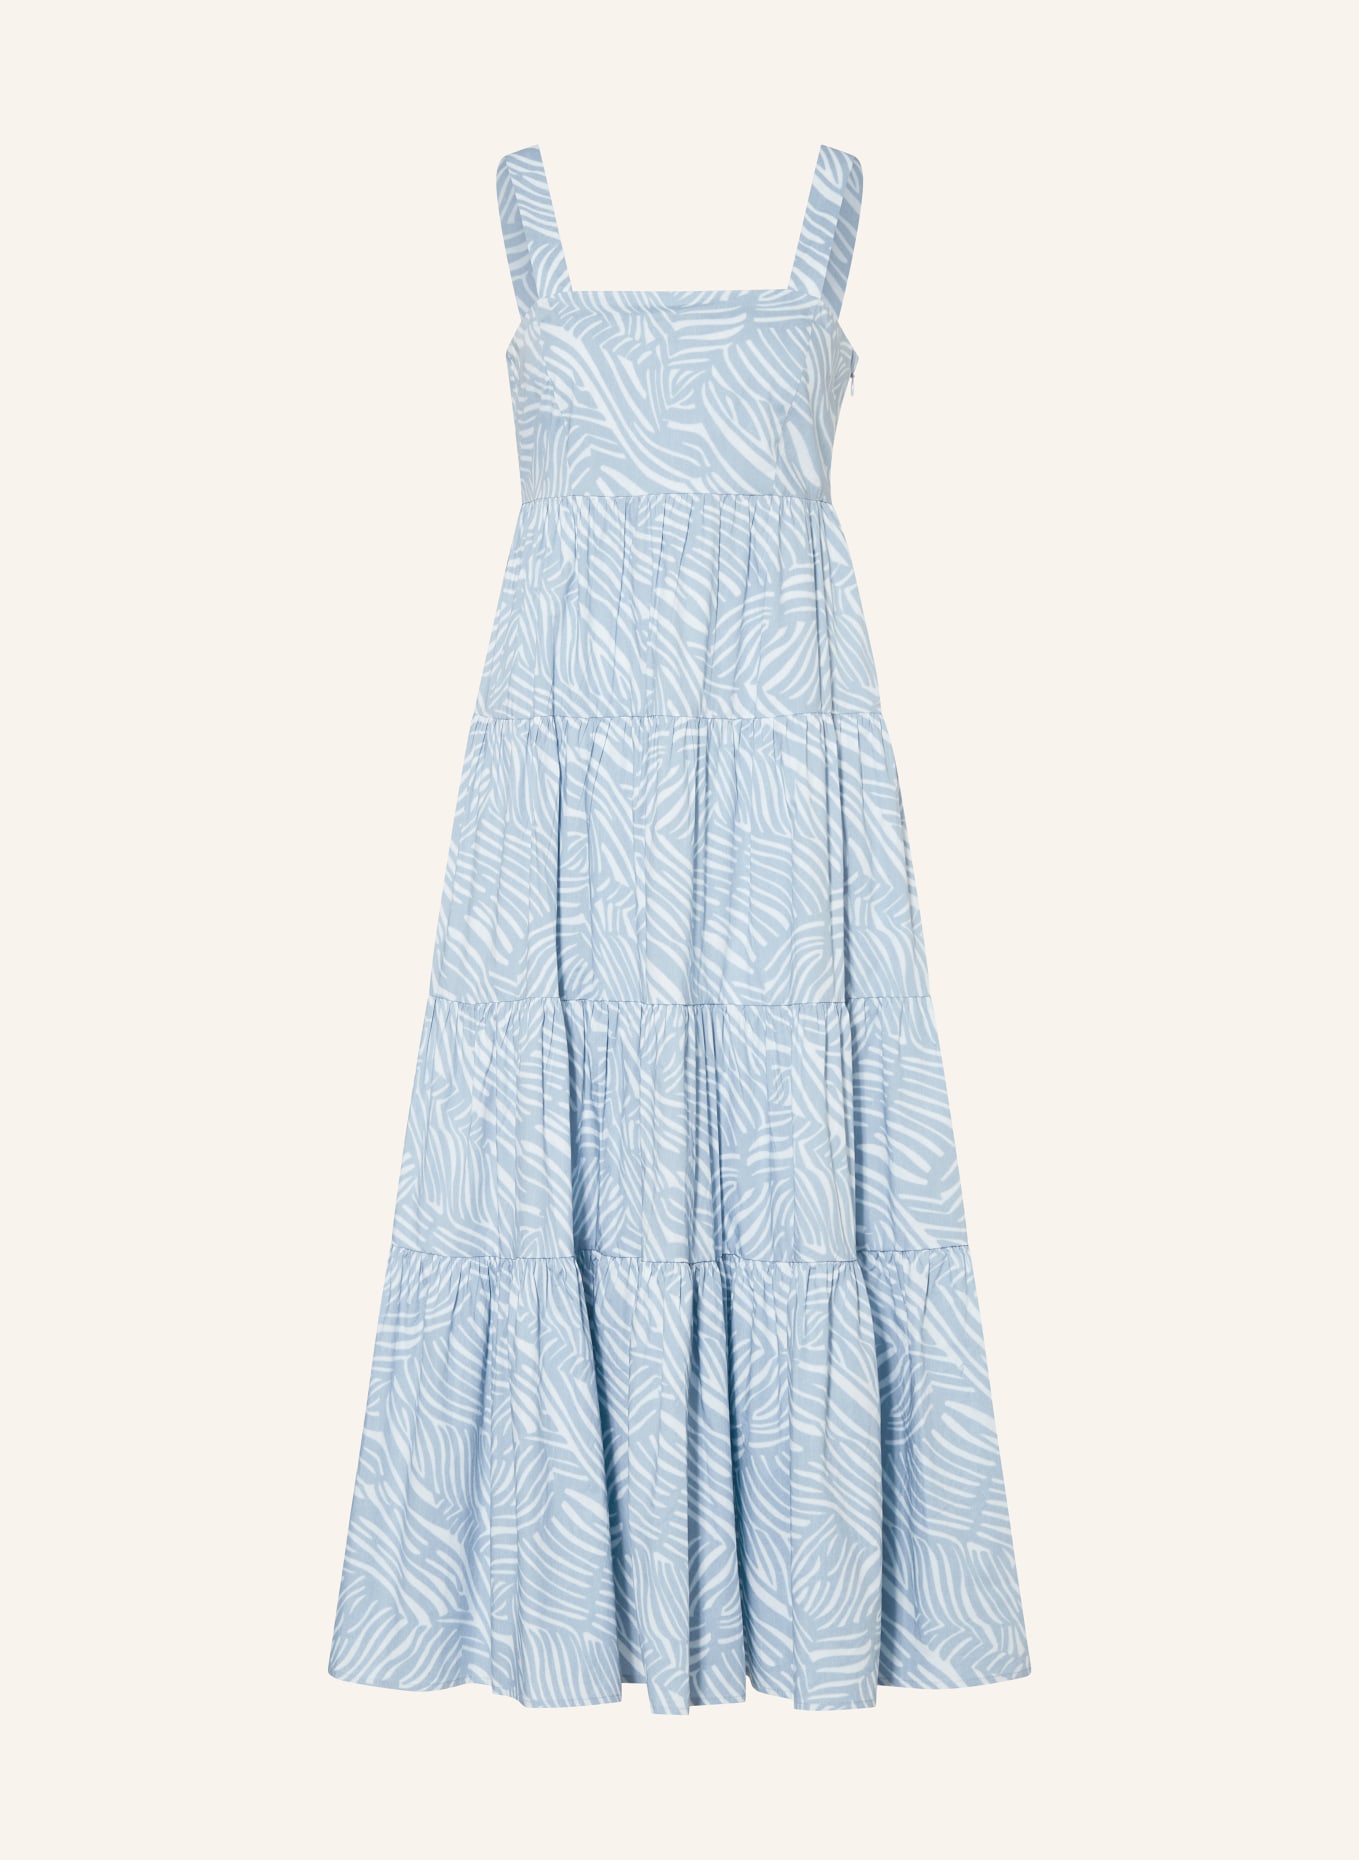 MICHAEL KORS Kleid, Farbe: BLAU/ HELLBLAU (Bild 1)